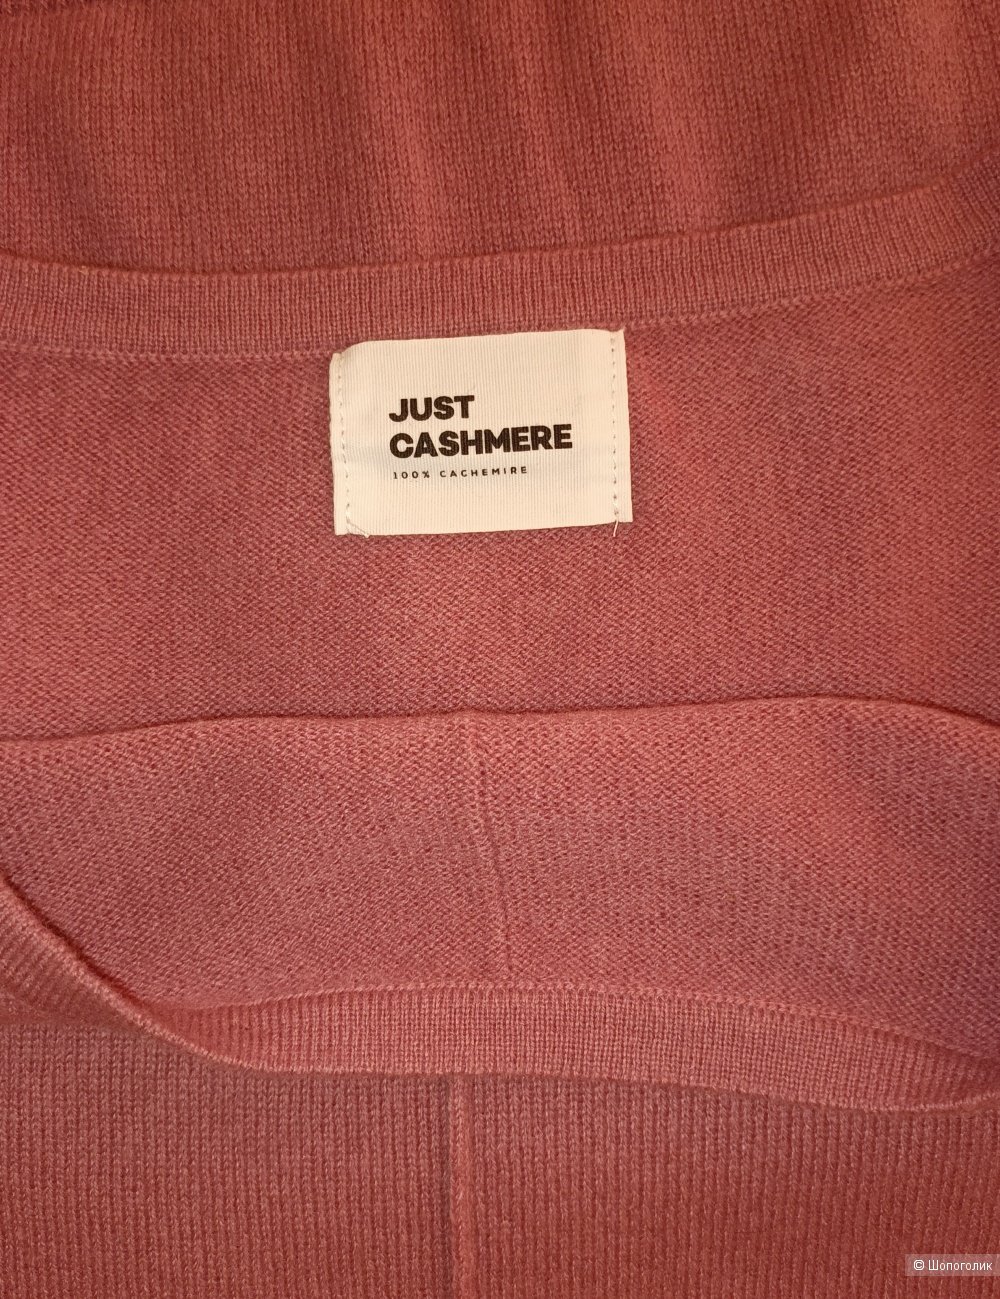 Кашемировый свитер Just Cashmere/L